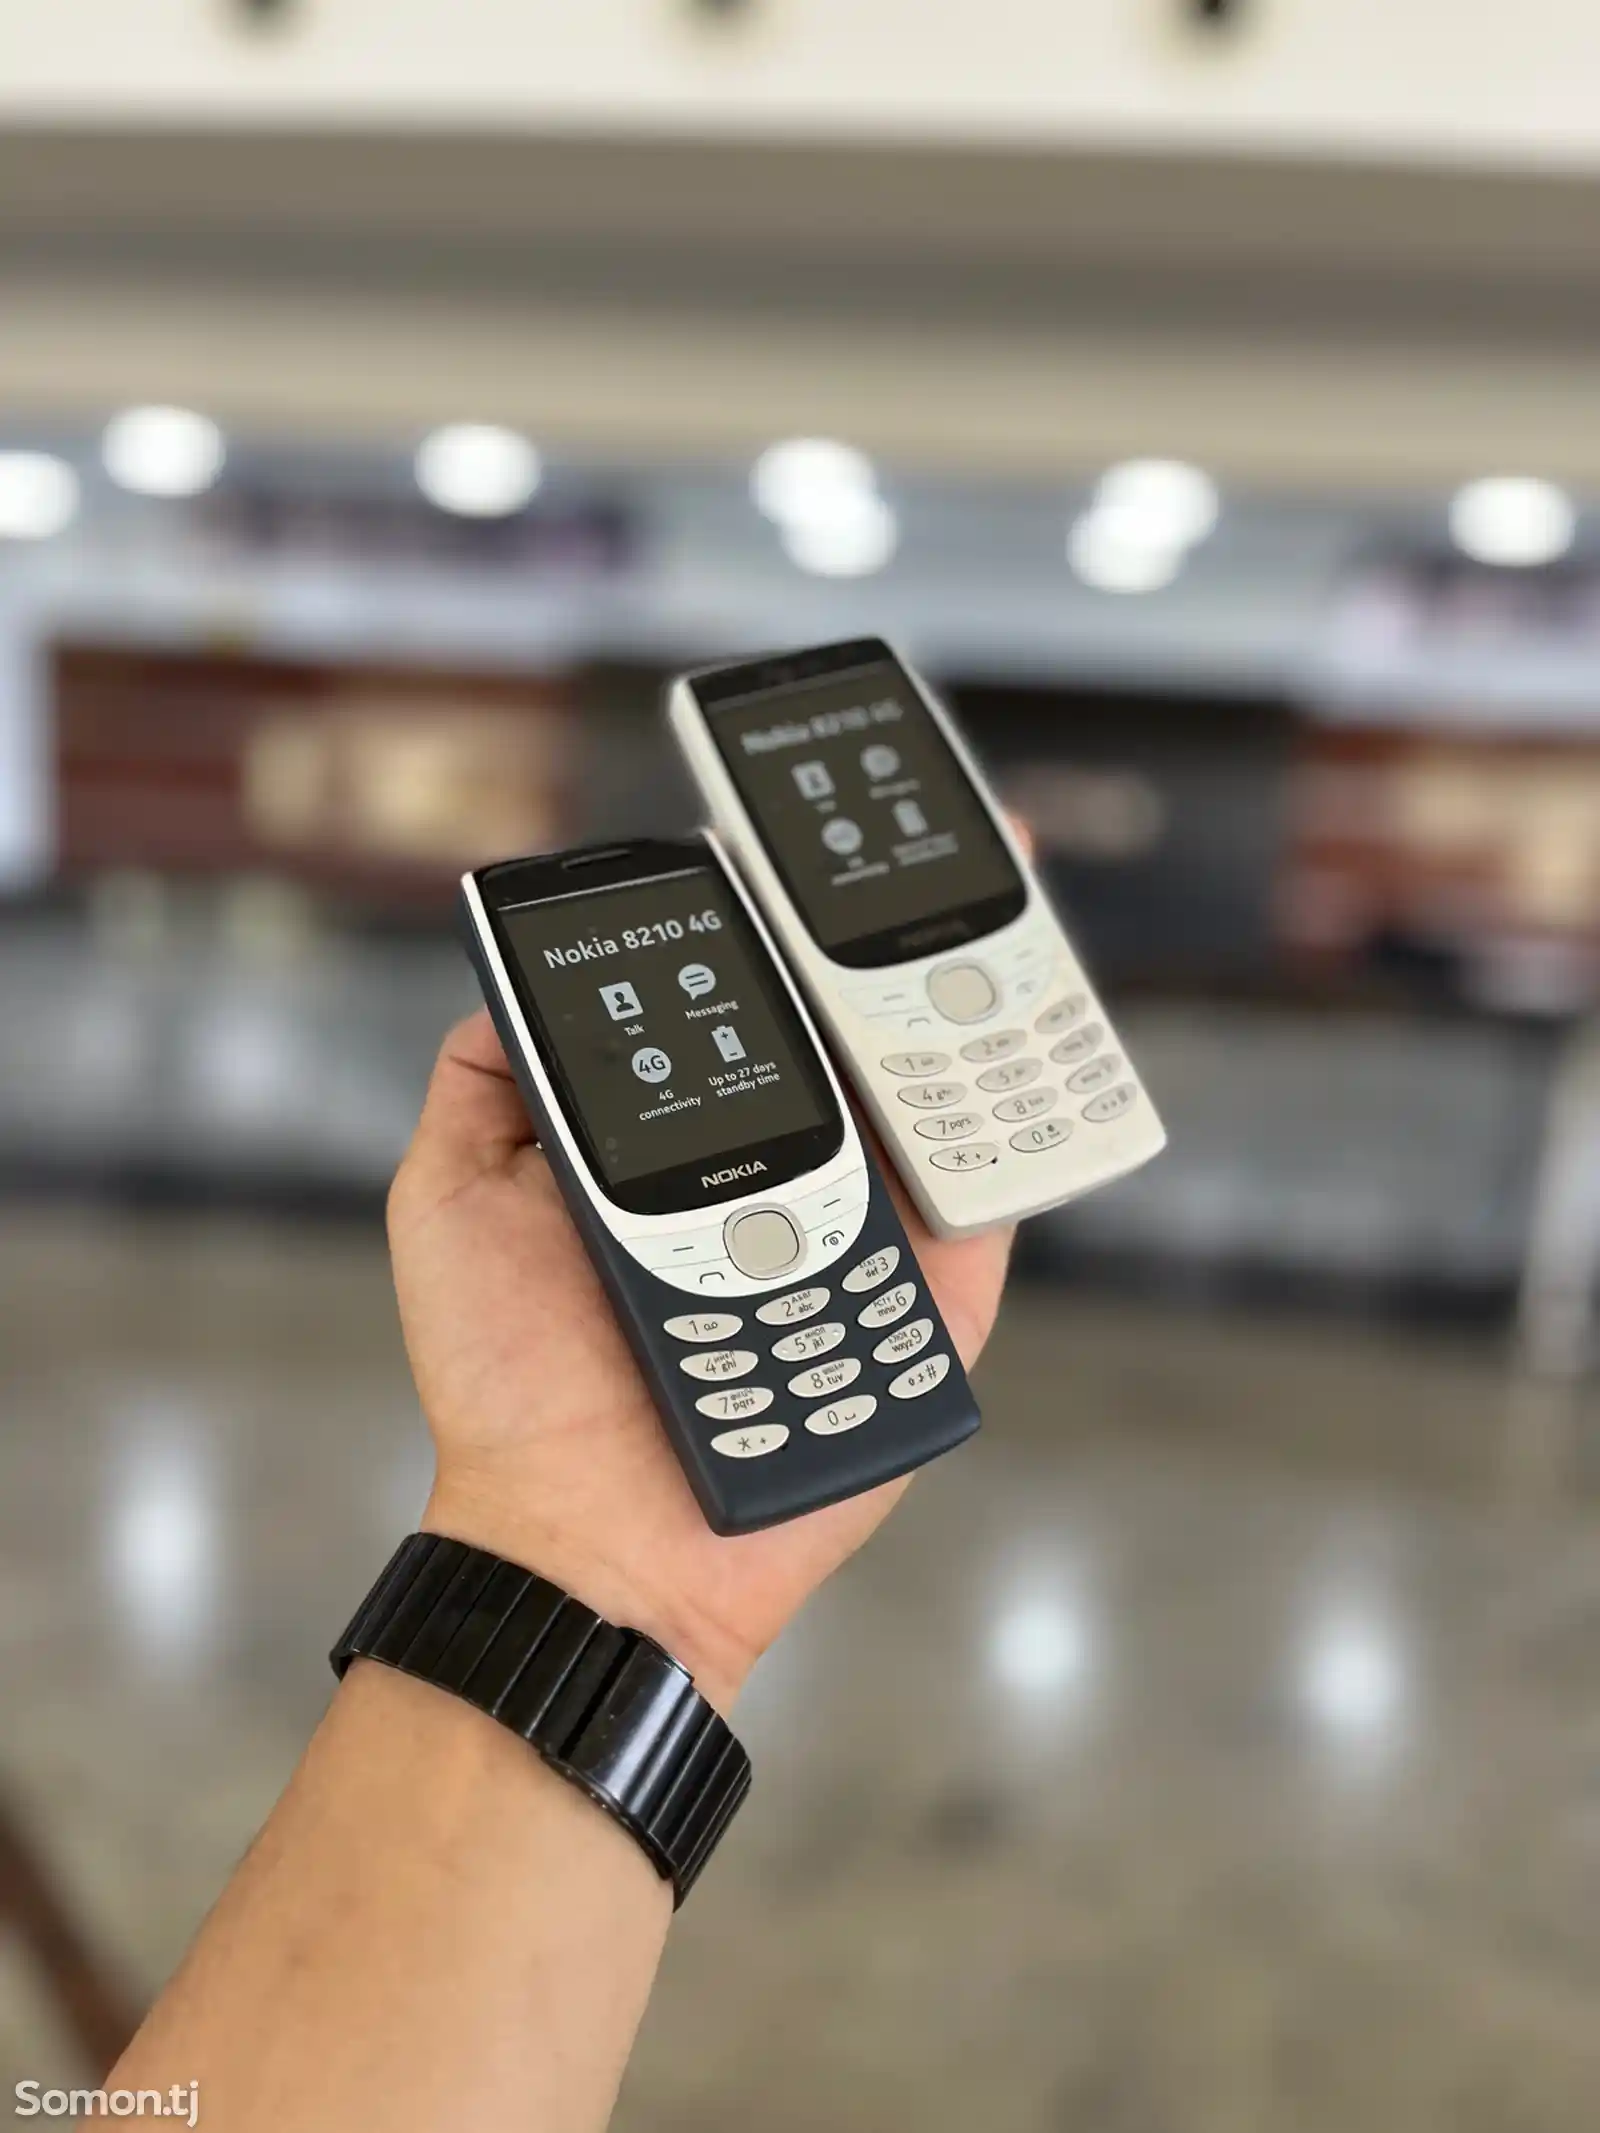 Nokia 8210 4G-2